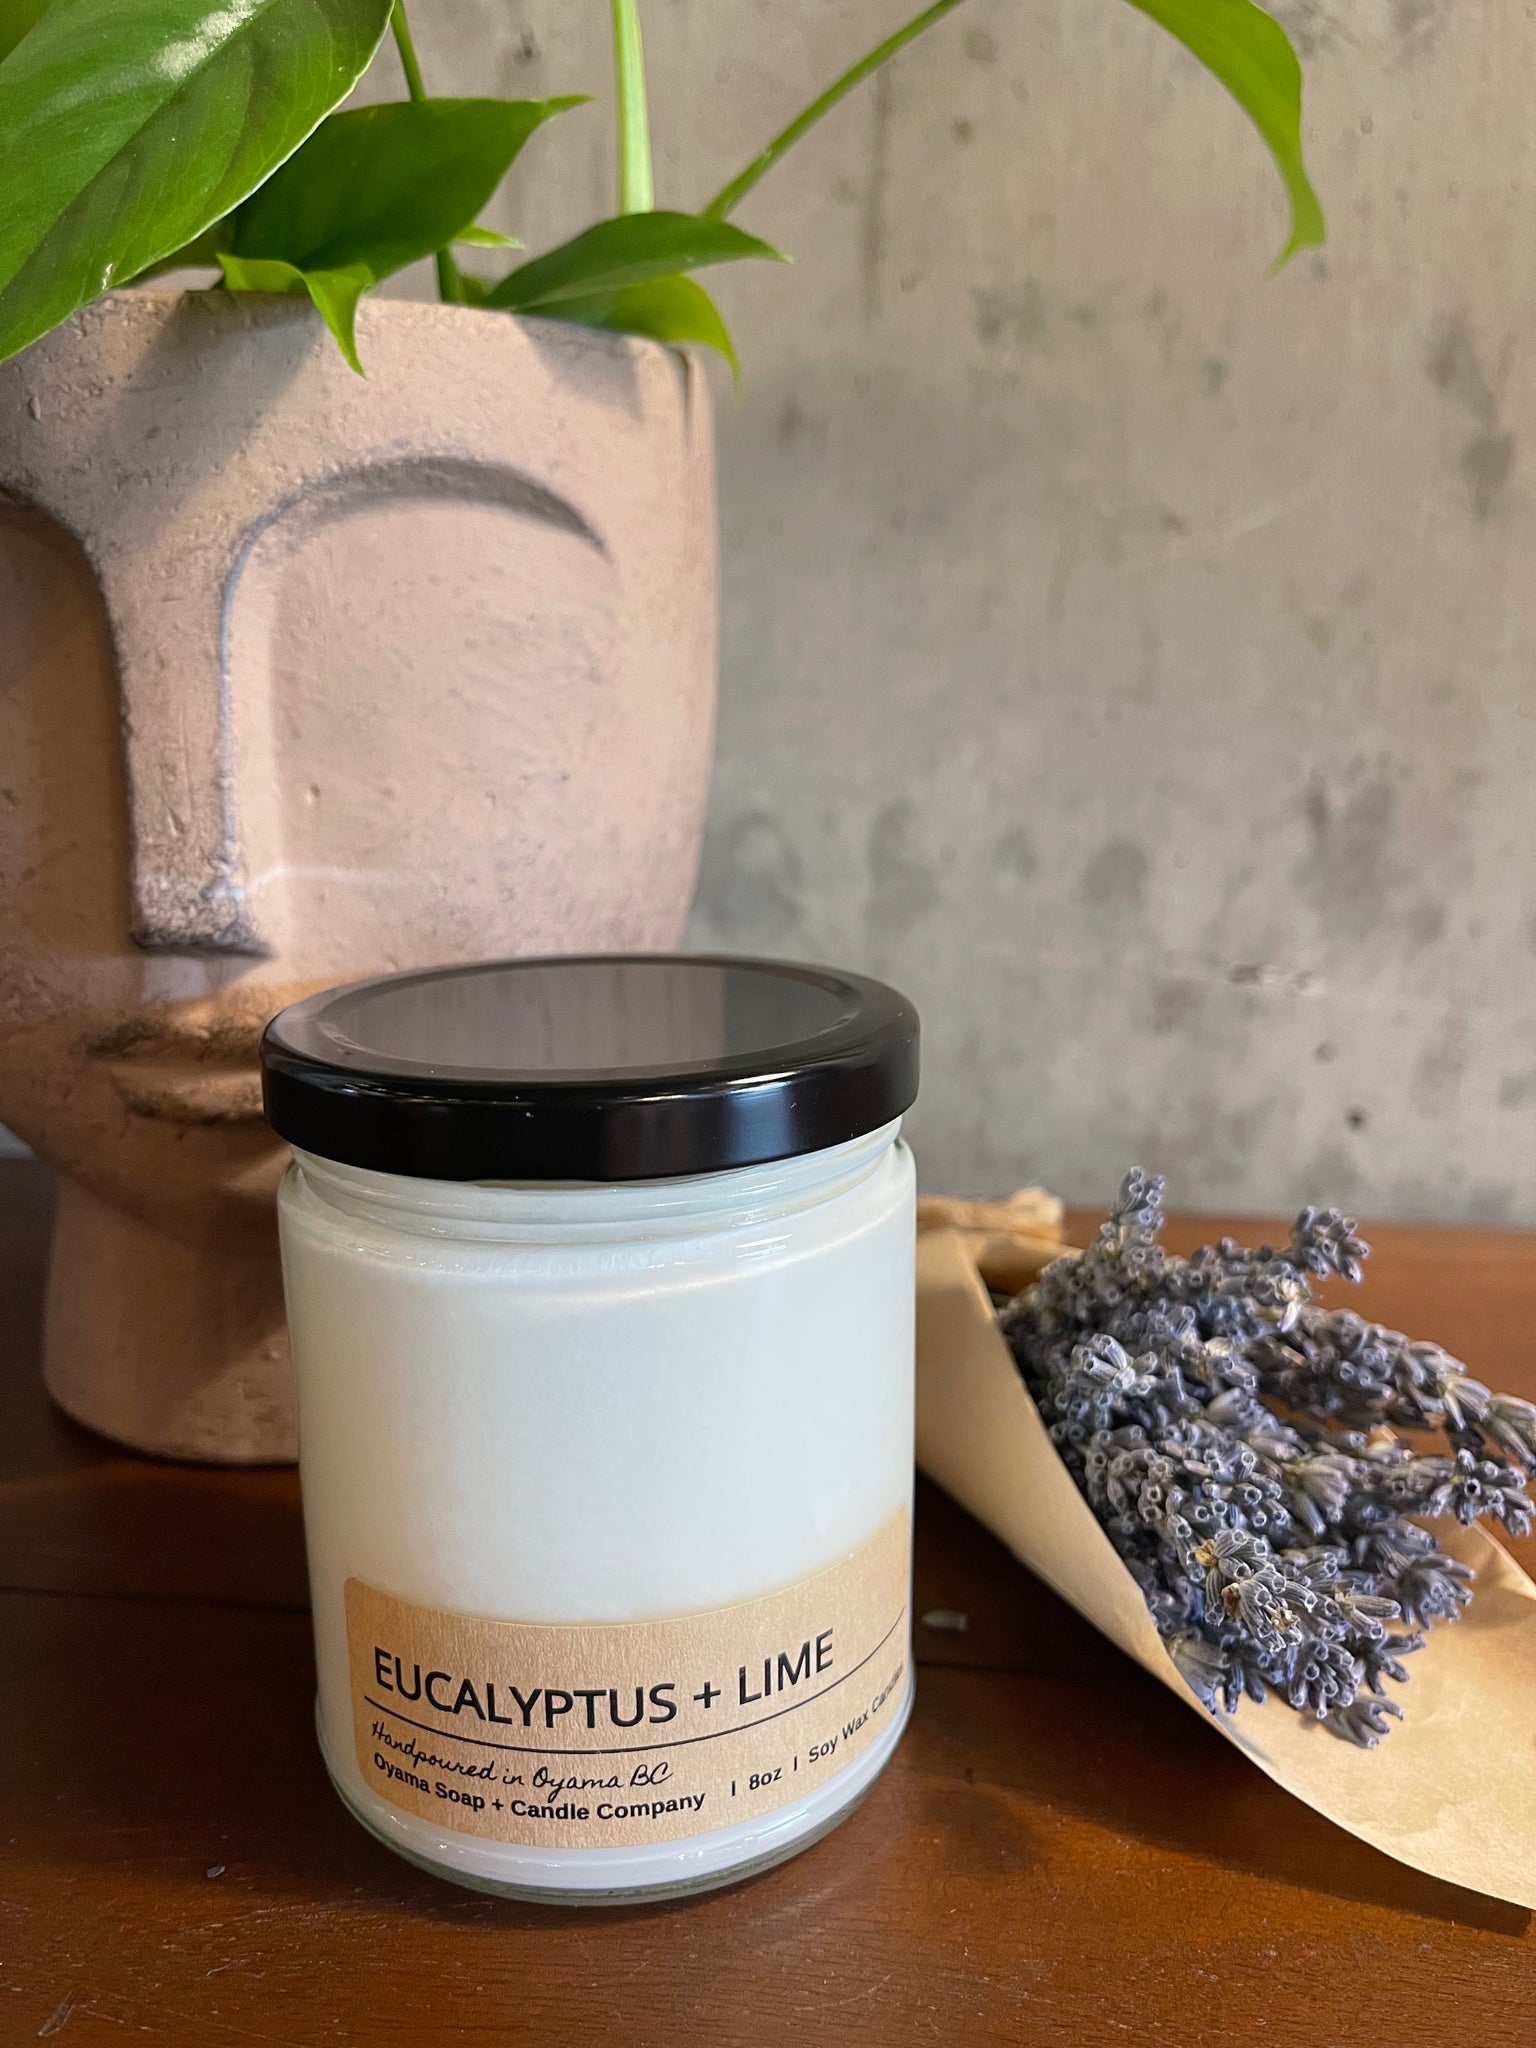 Oyama Co. - Eucalyptus & Lime Soy Candle